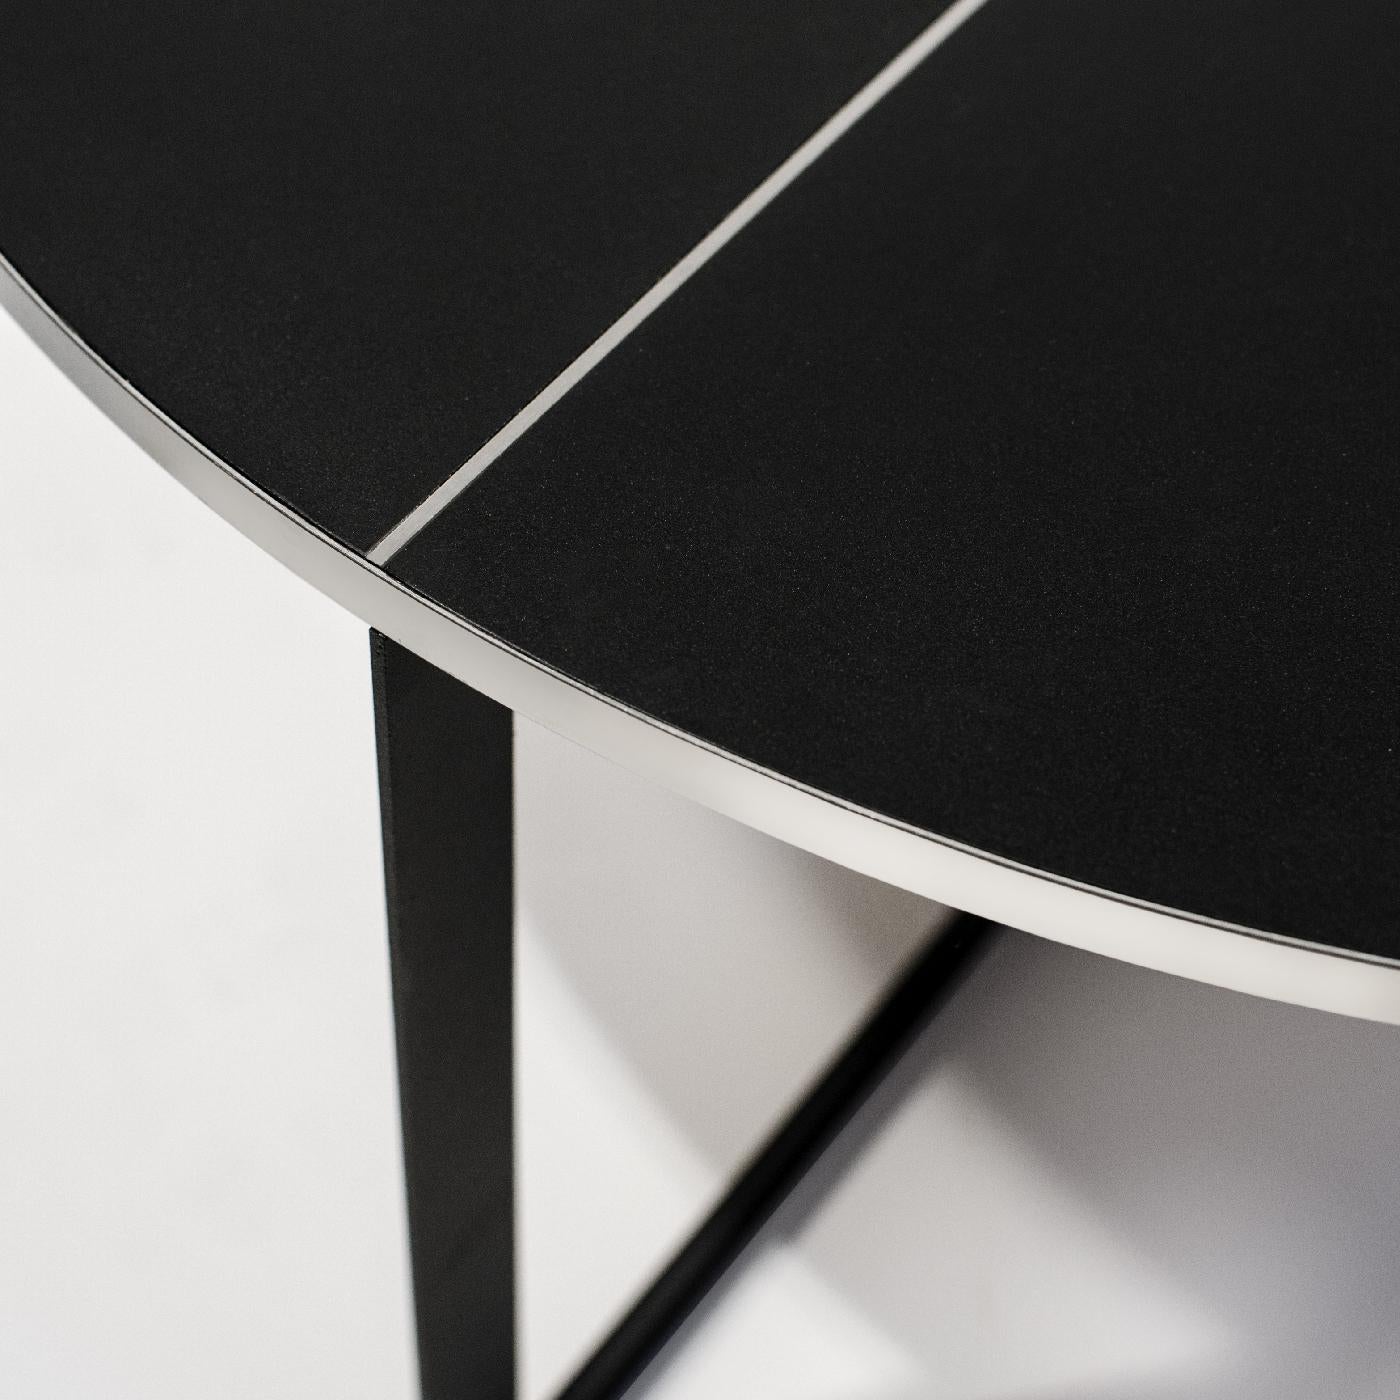 Cette superbe table basse est un choix audacieux et raffiné pour un salon contemporain ou industriel. Sa structure géométrique comprend quatre pieds qui se croisent à la base et soutiennent un plateau rond et lisse. La pièce est entièrement